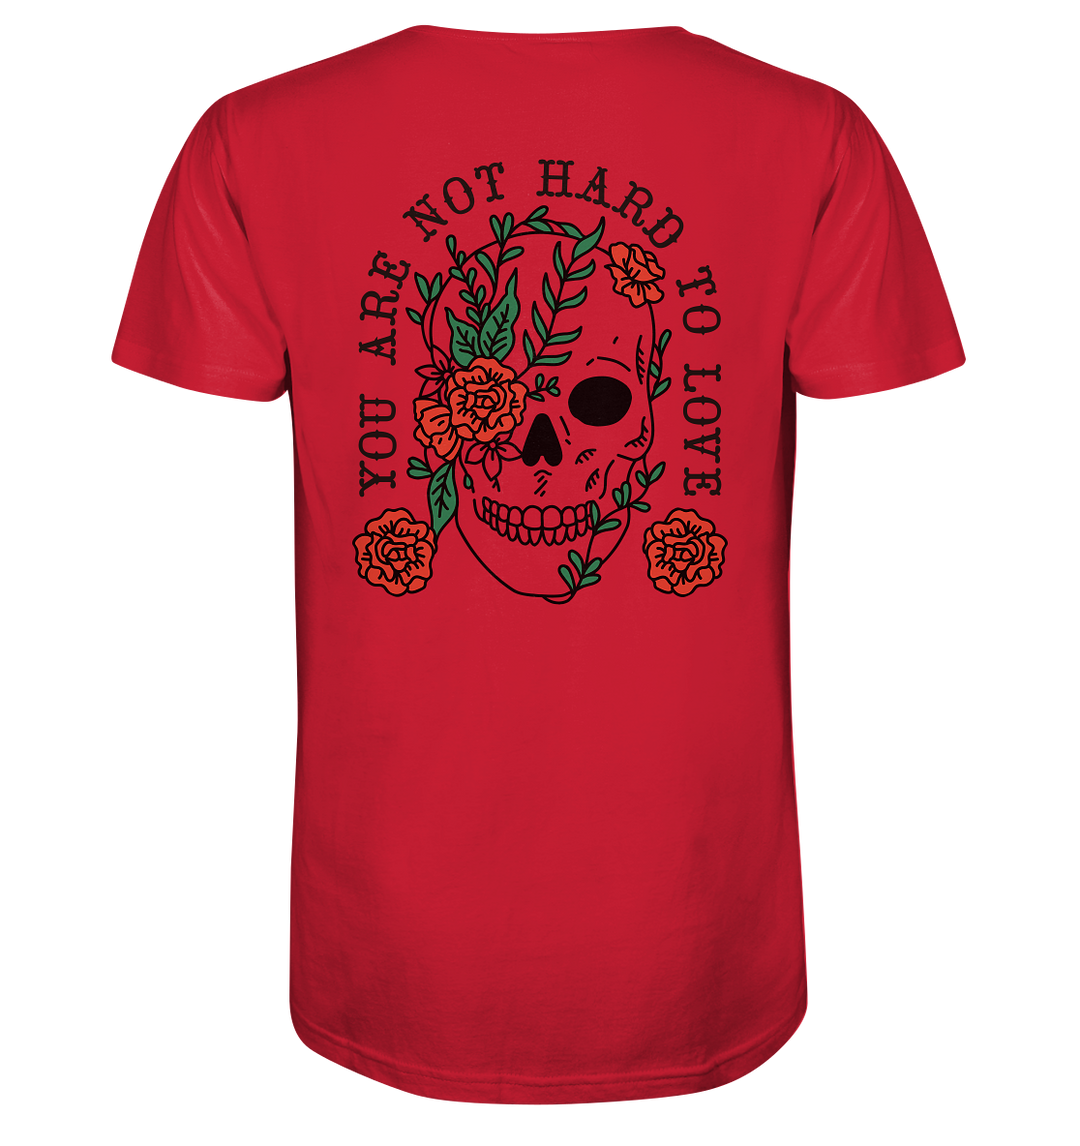 Not Hard to Love Herren - Organic Shirt Red Herren Shirt Motiv Organic Shirt True Statement